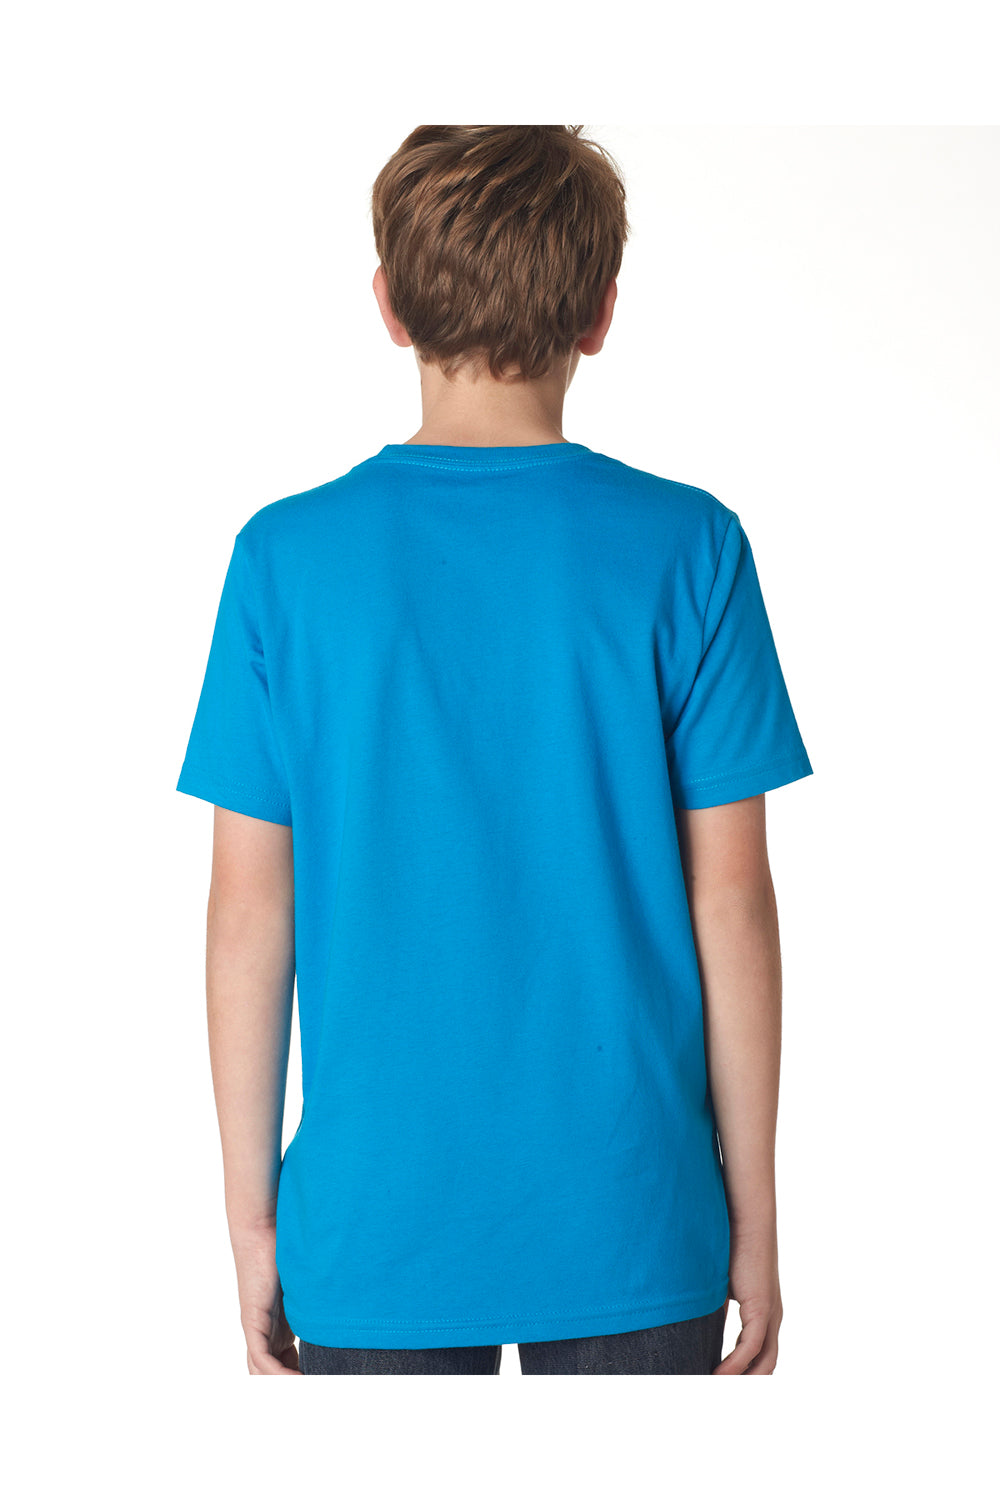 Next Level 3310 Youth Fine Jersey Short Sleeve Crewneck T-Shirt Turquoise Blue Back